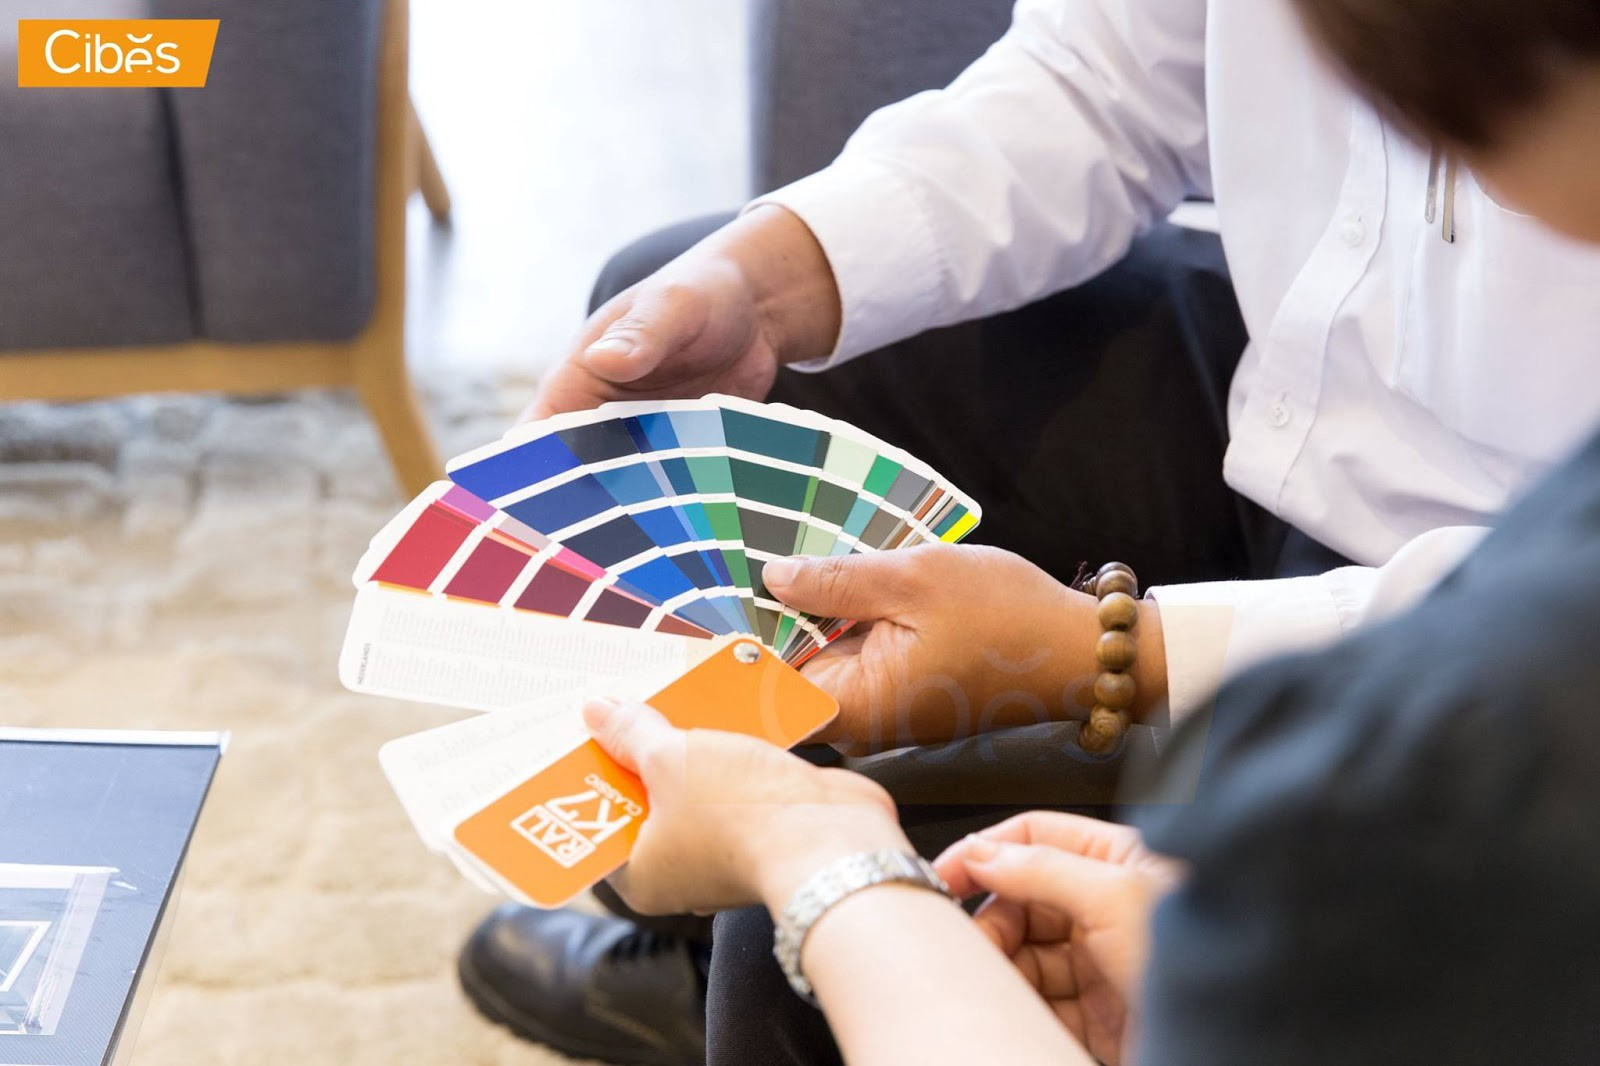 Với 248 màu sắc tùy chọn cùng họa tiết đa dạng, thang máy Cibes có thể đáp ứng tốt nhu cầu của bạn